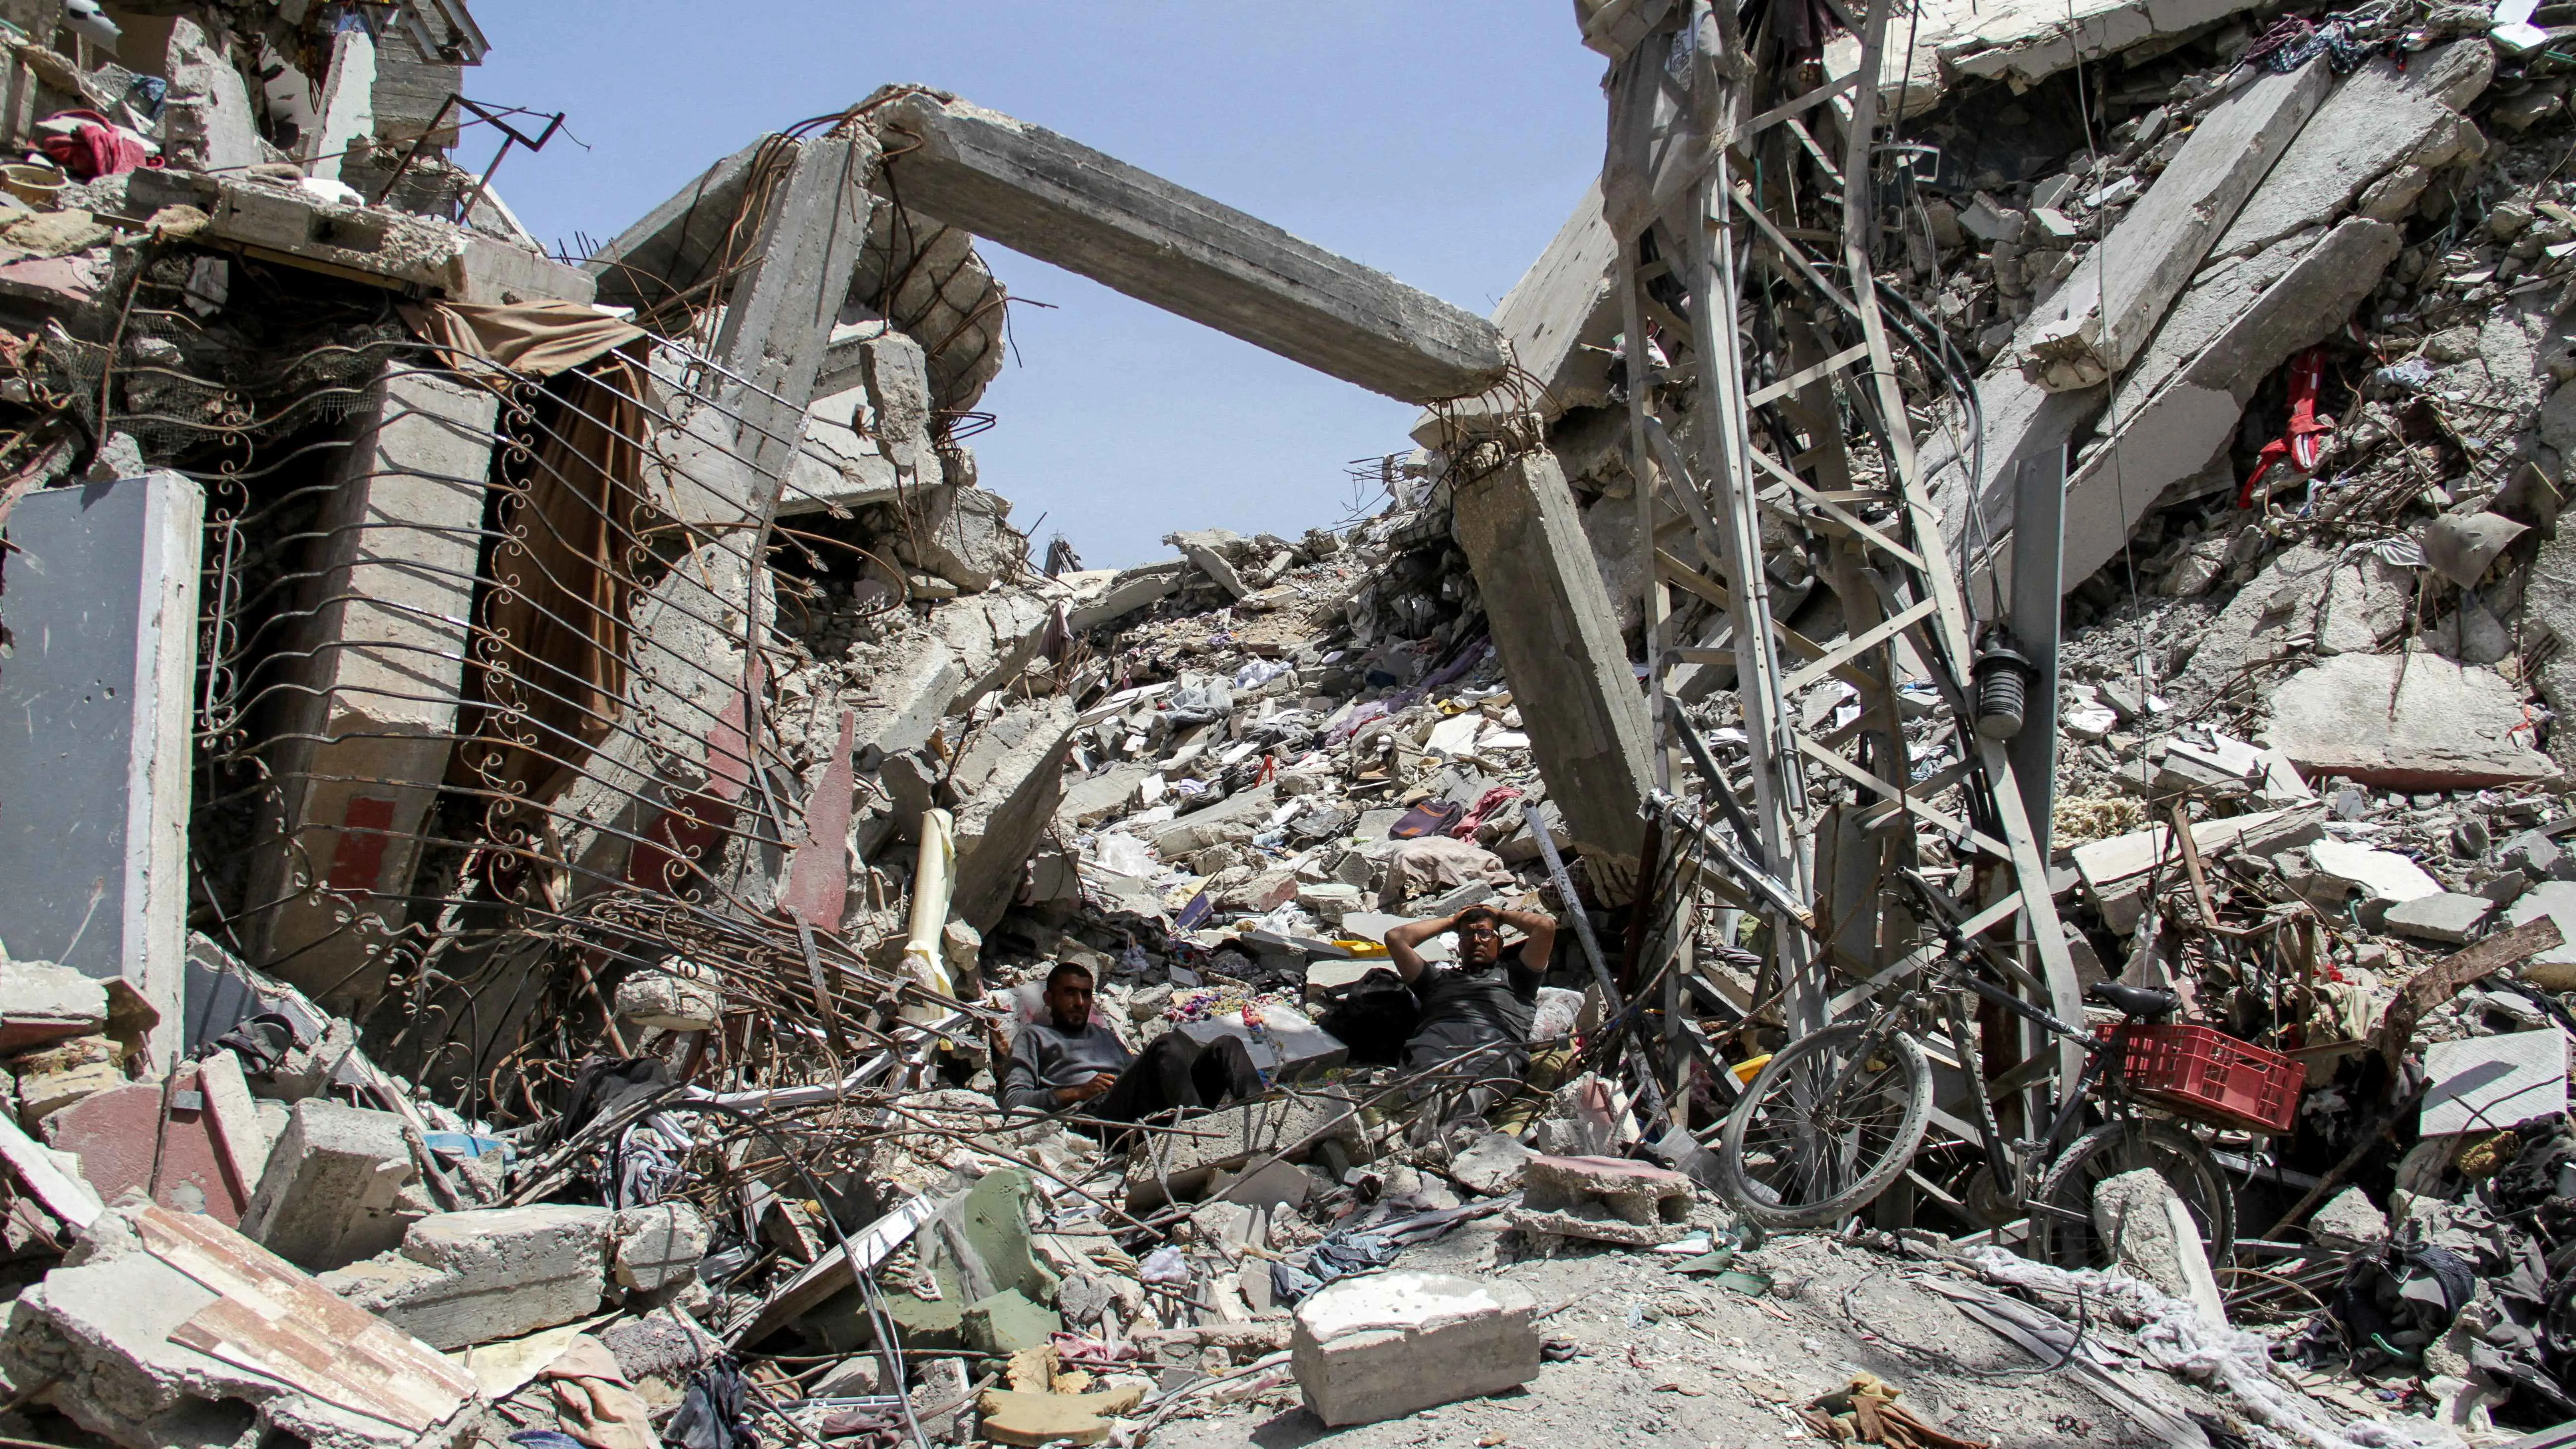 حماس: نرفض أي تصريحات تدعم دخول قوات أجنبية إلى غزة